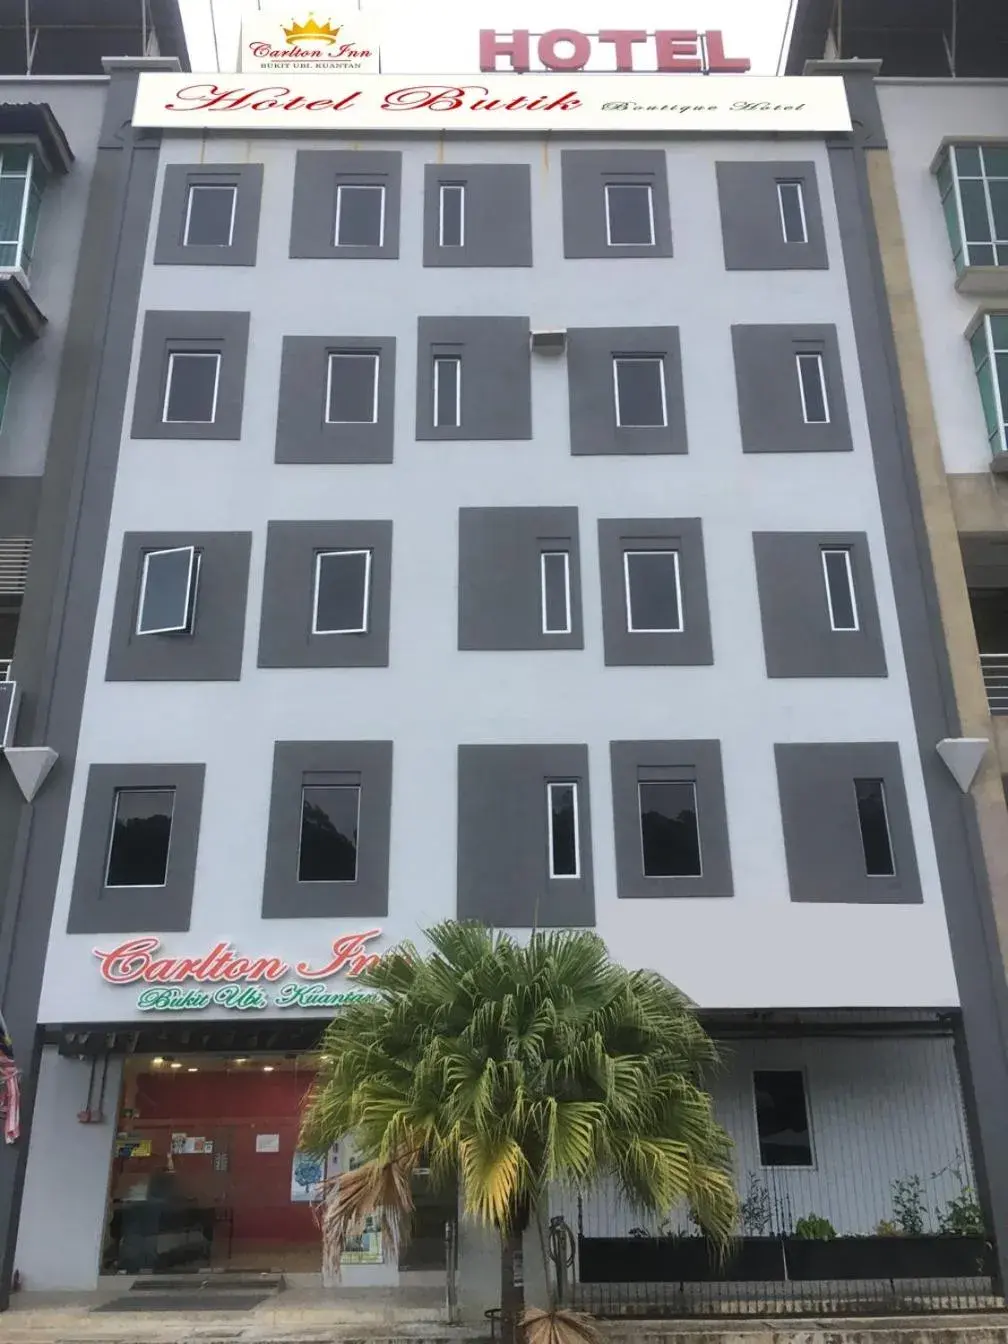 Property Building in Carlton Inn Bukit Ubi